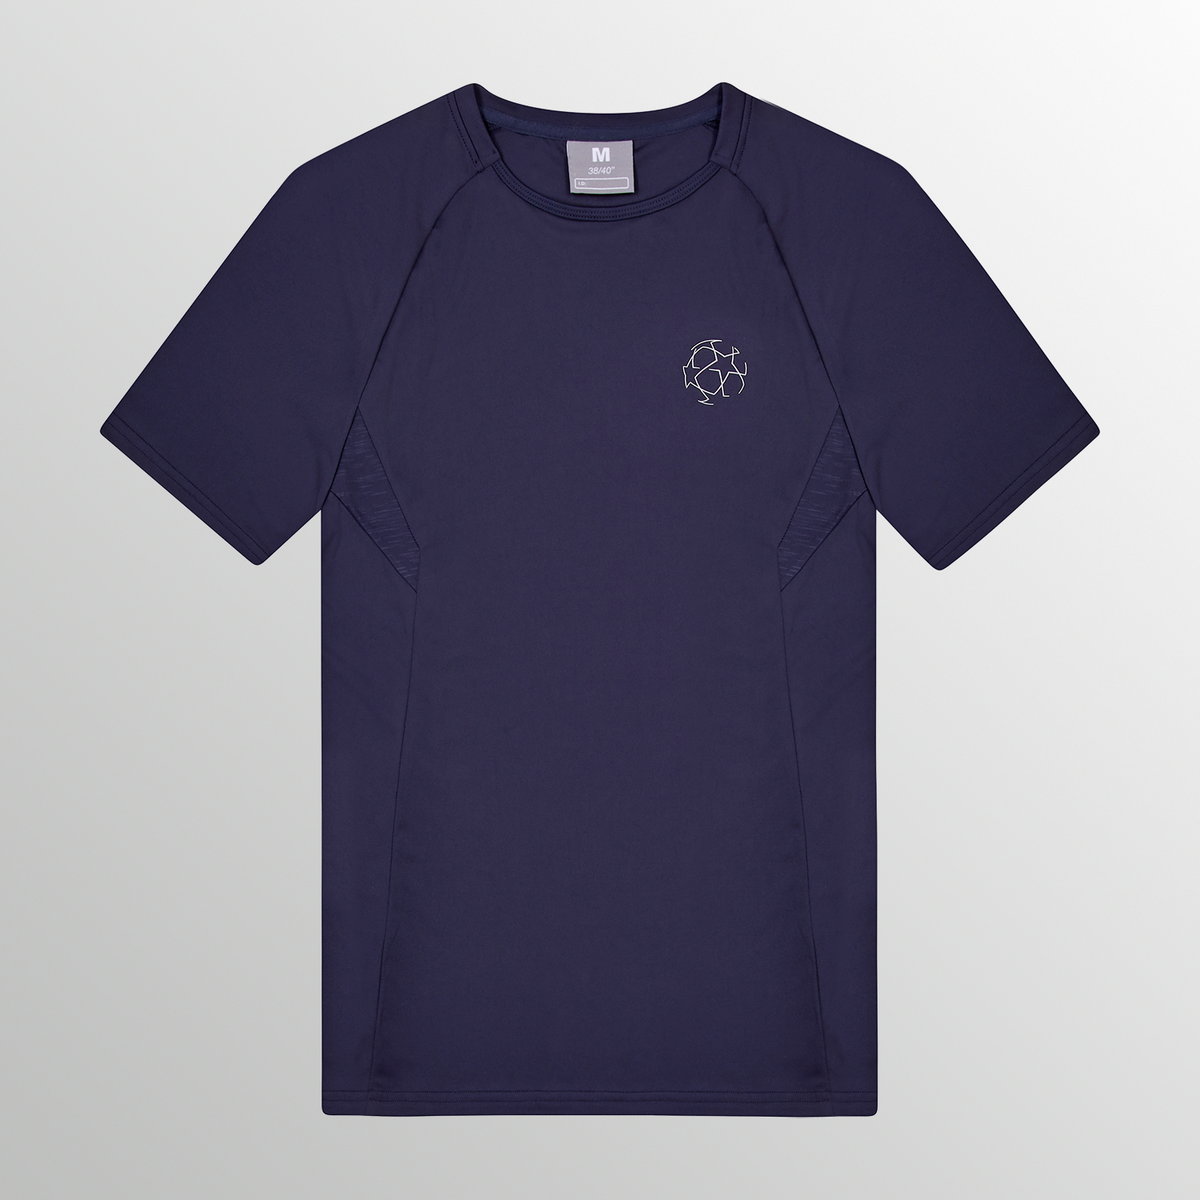 UEFA Champions League - Premium Eco Tech T-shirt